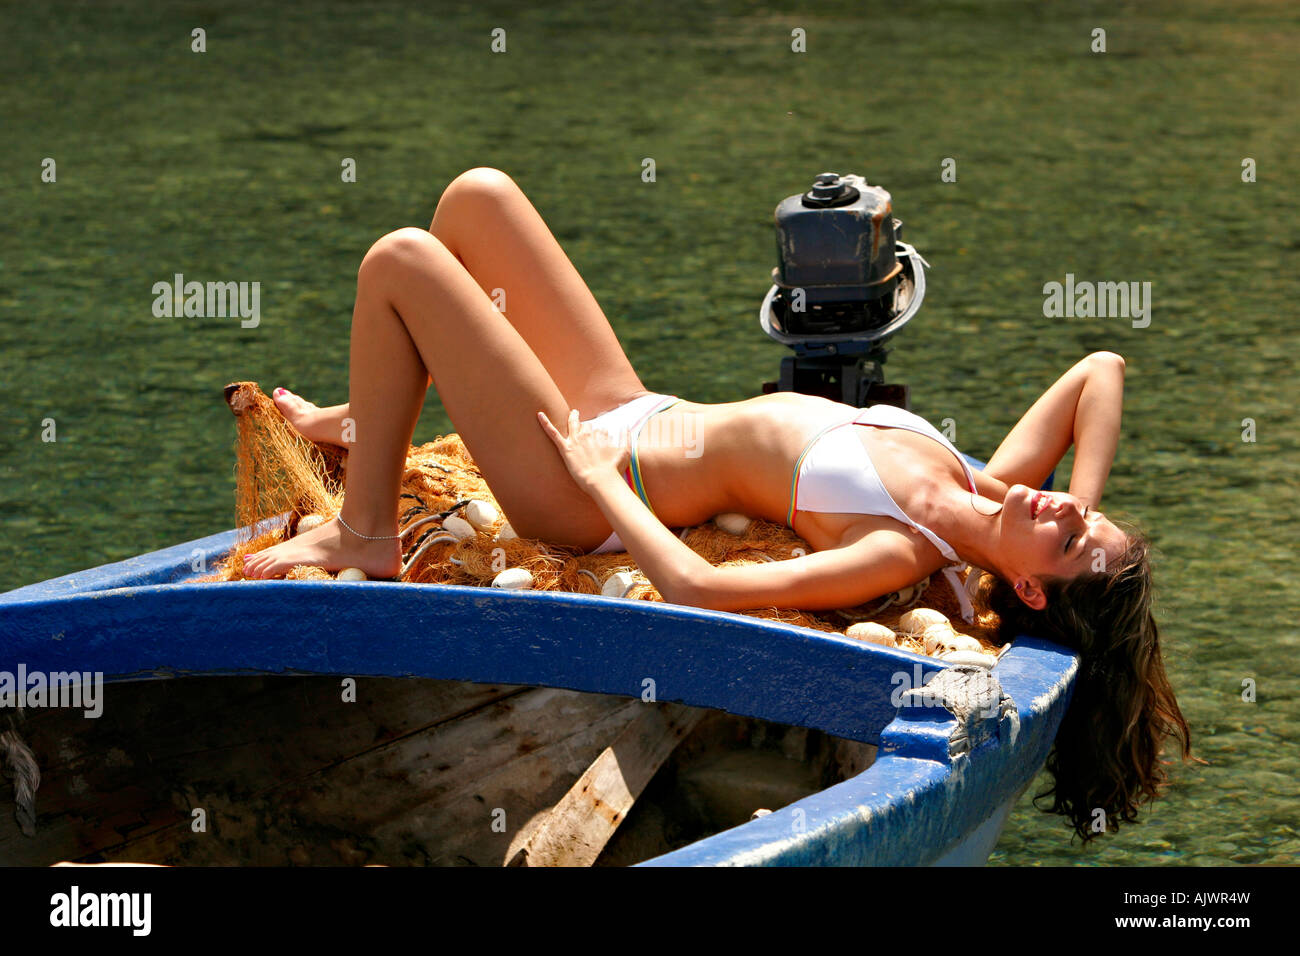 HRV Kroatien Dubrovnik 27 05 2007 Junge Frau beim Sonnenbaden am Meer Croazia 27 05 2007 giovane donna con bagni di sole al mare Foto Stock